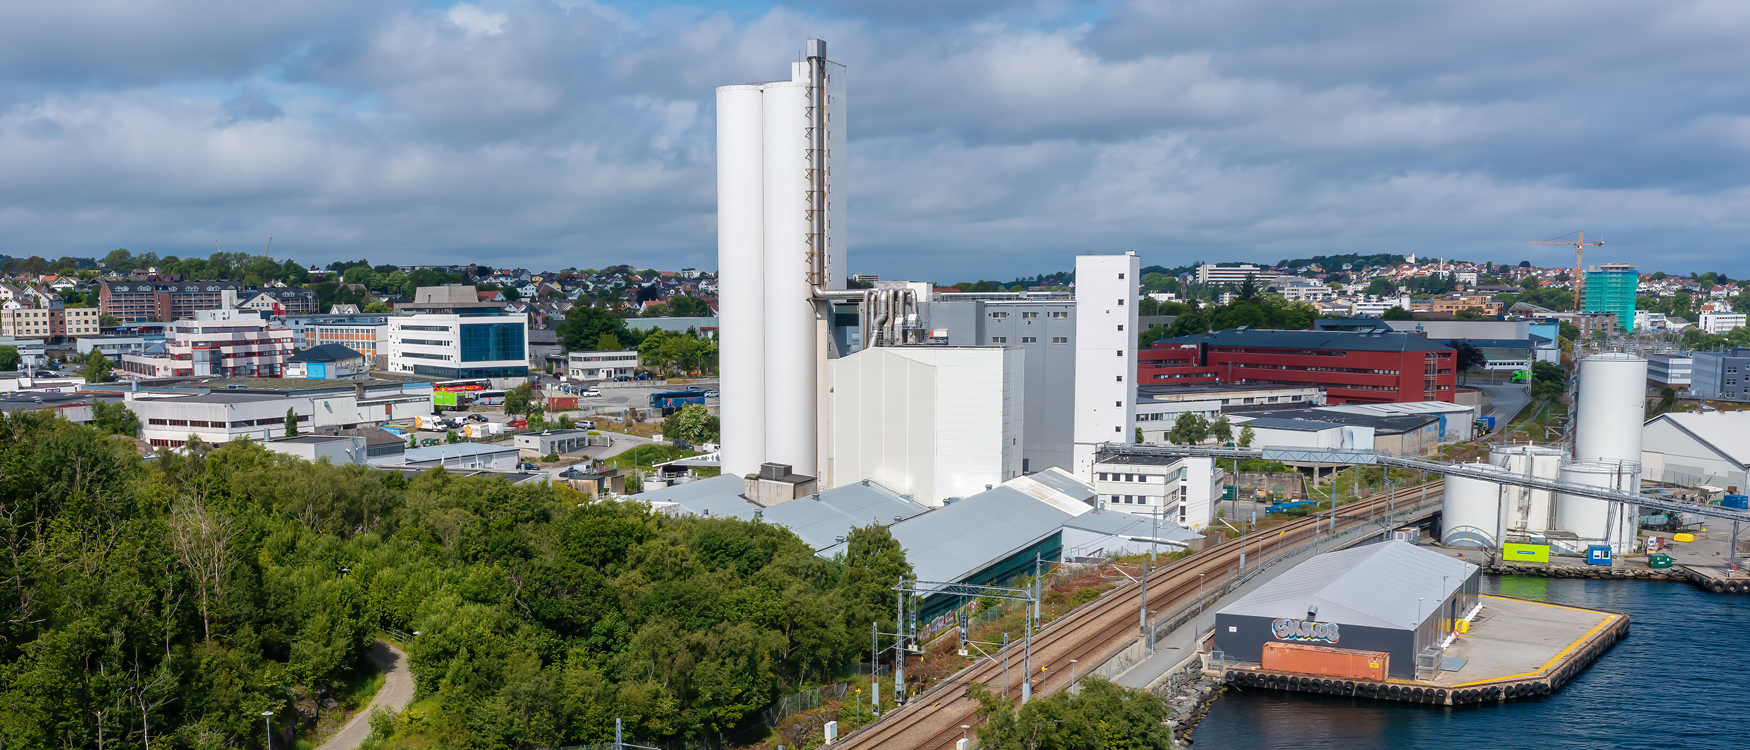 Siden 2010 har Skretting Norge systematisk arbeidet for å redusere energiforbruk i fabrikkene